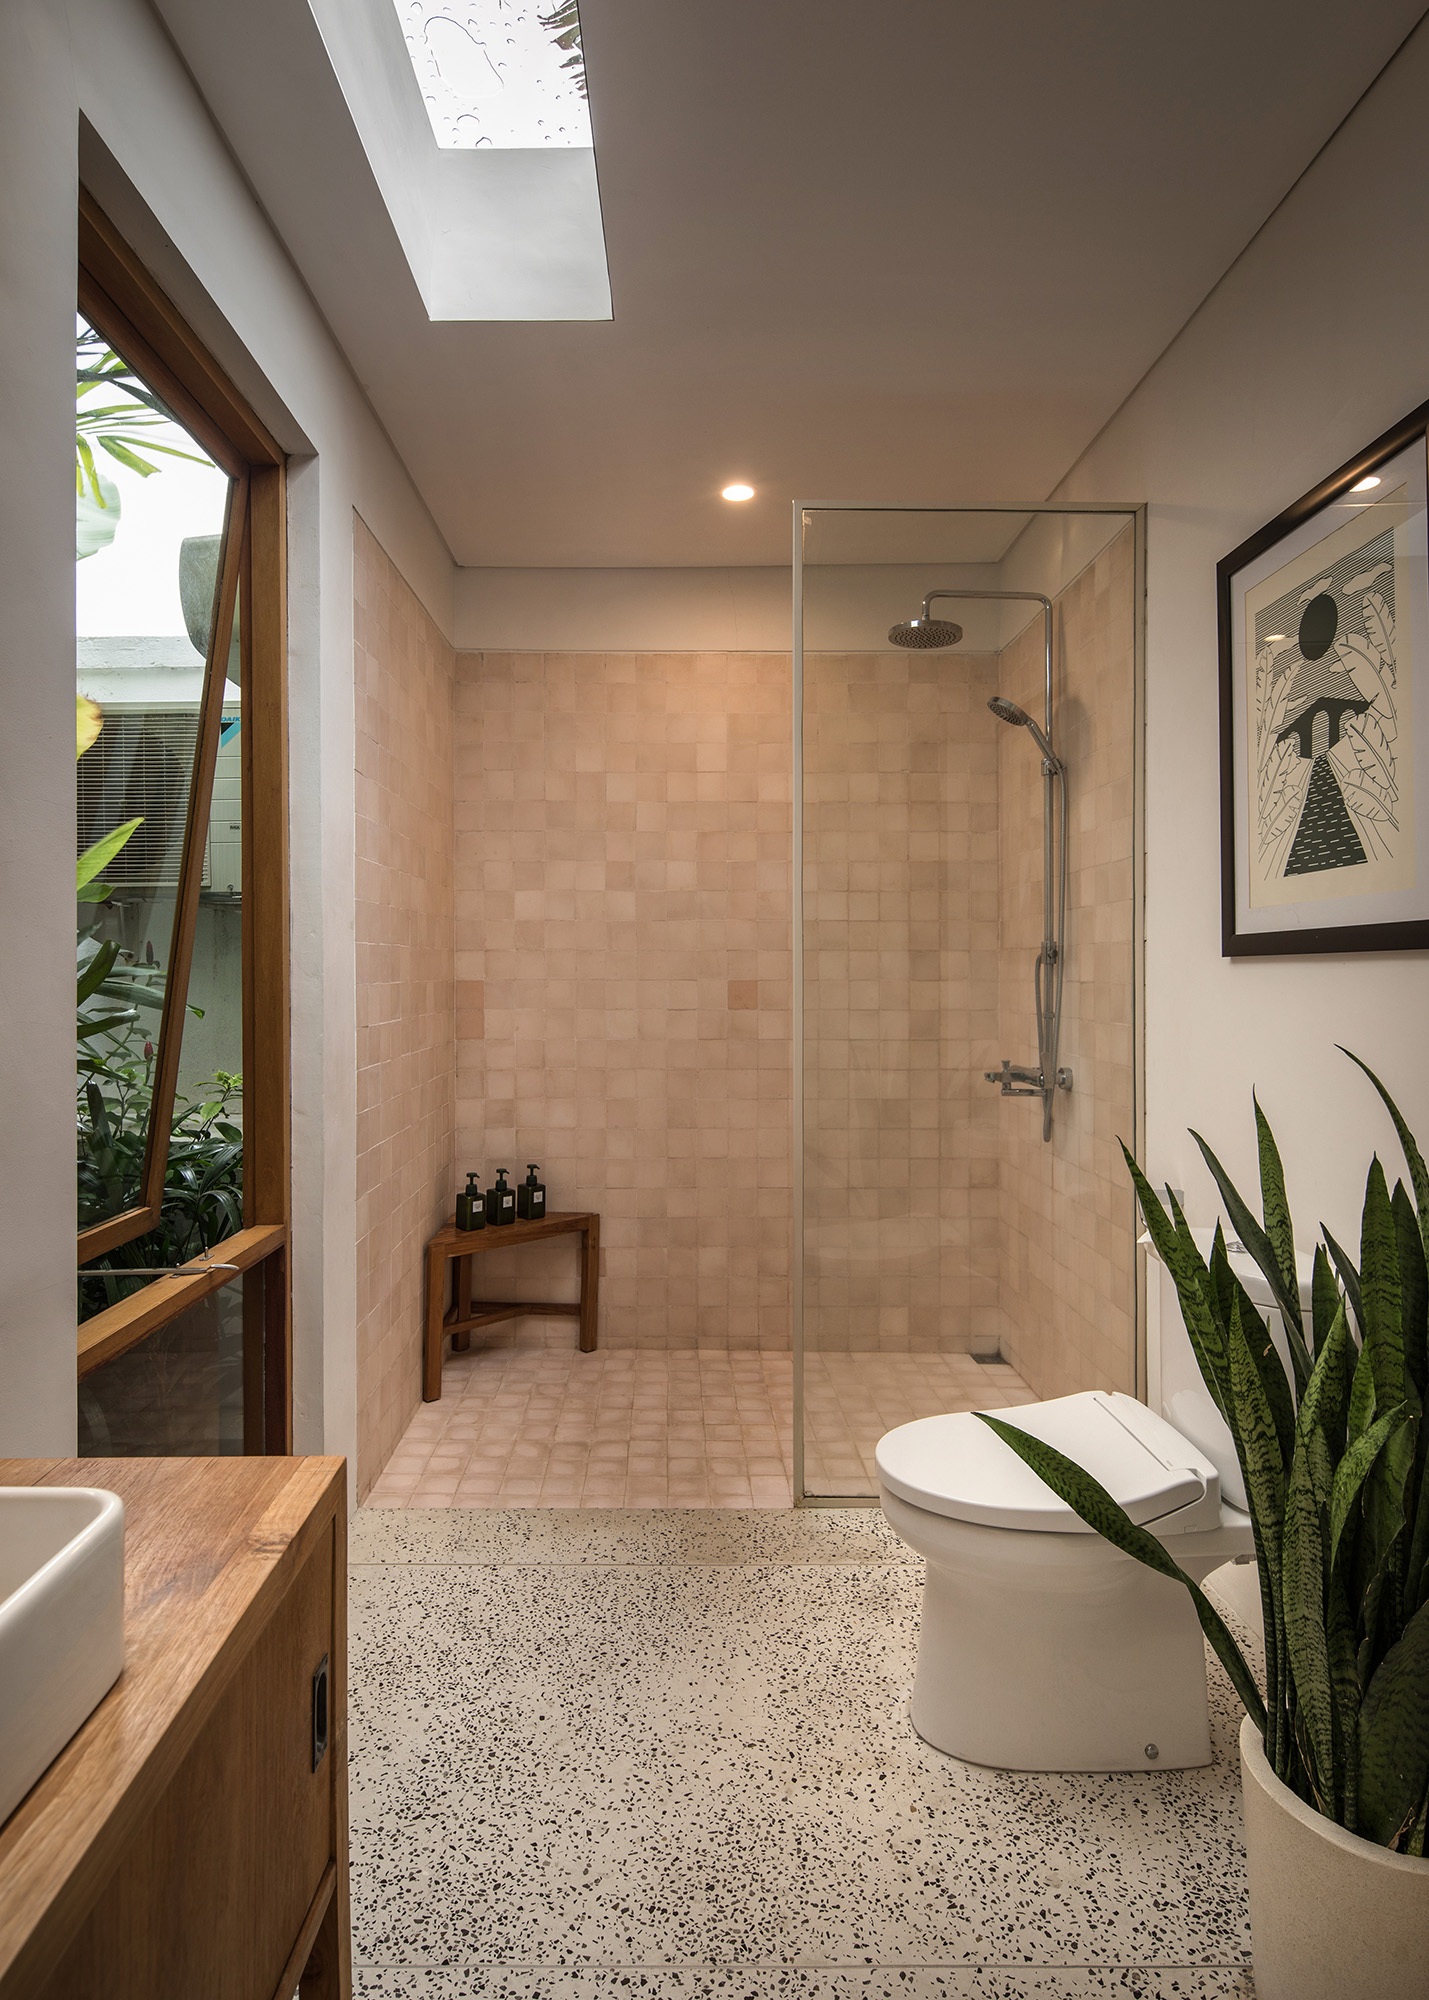 Design Assembly - Two Palms Studio - Bali Architect - Interior Design - Bali Villa - Bathroom